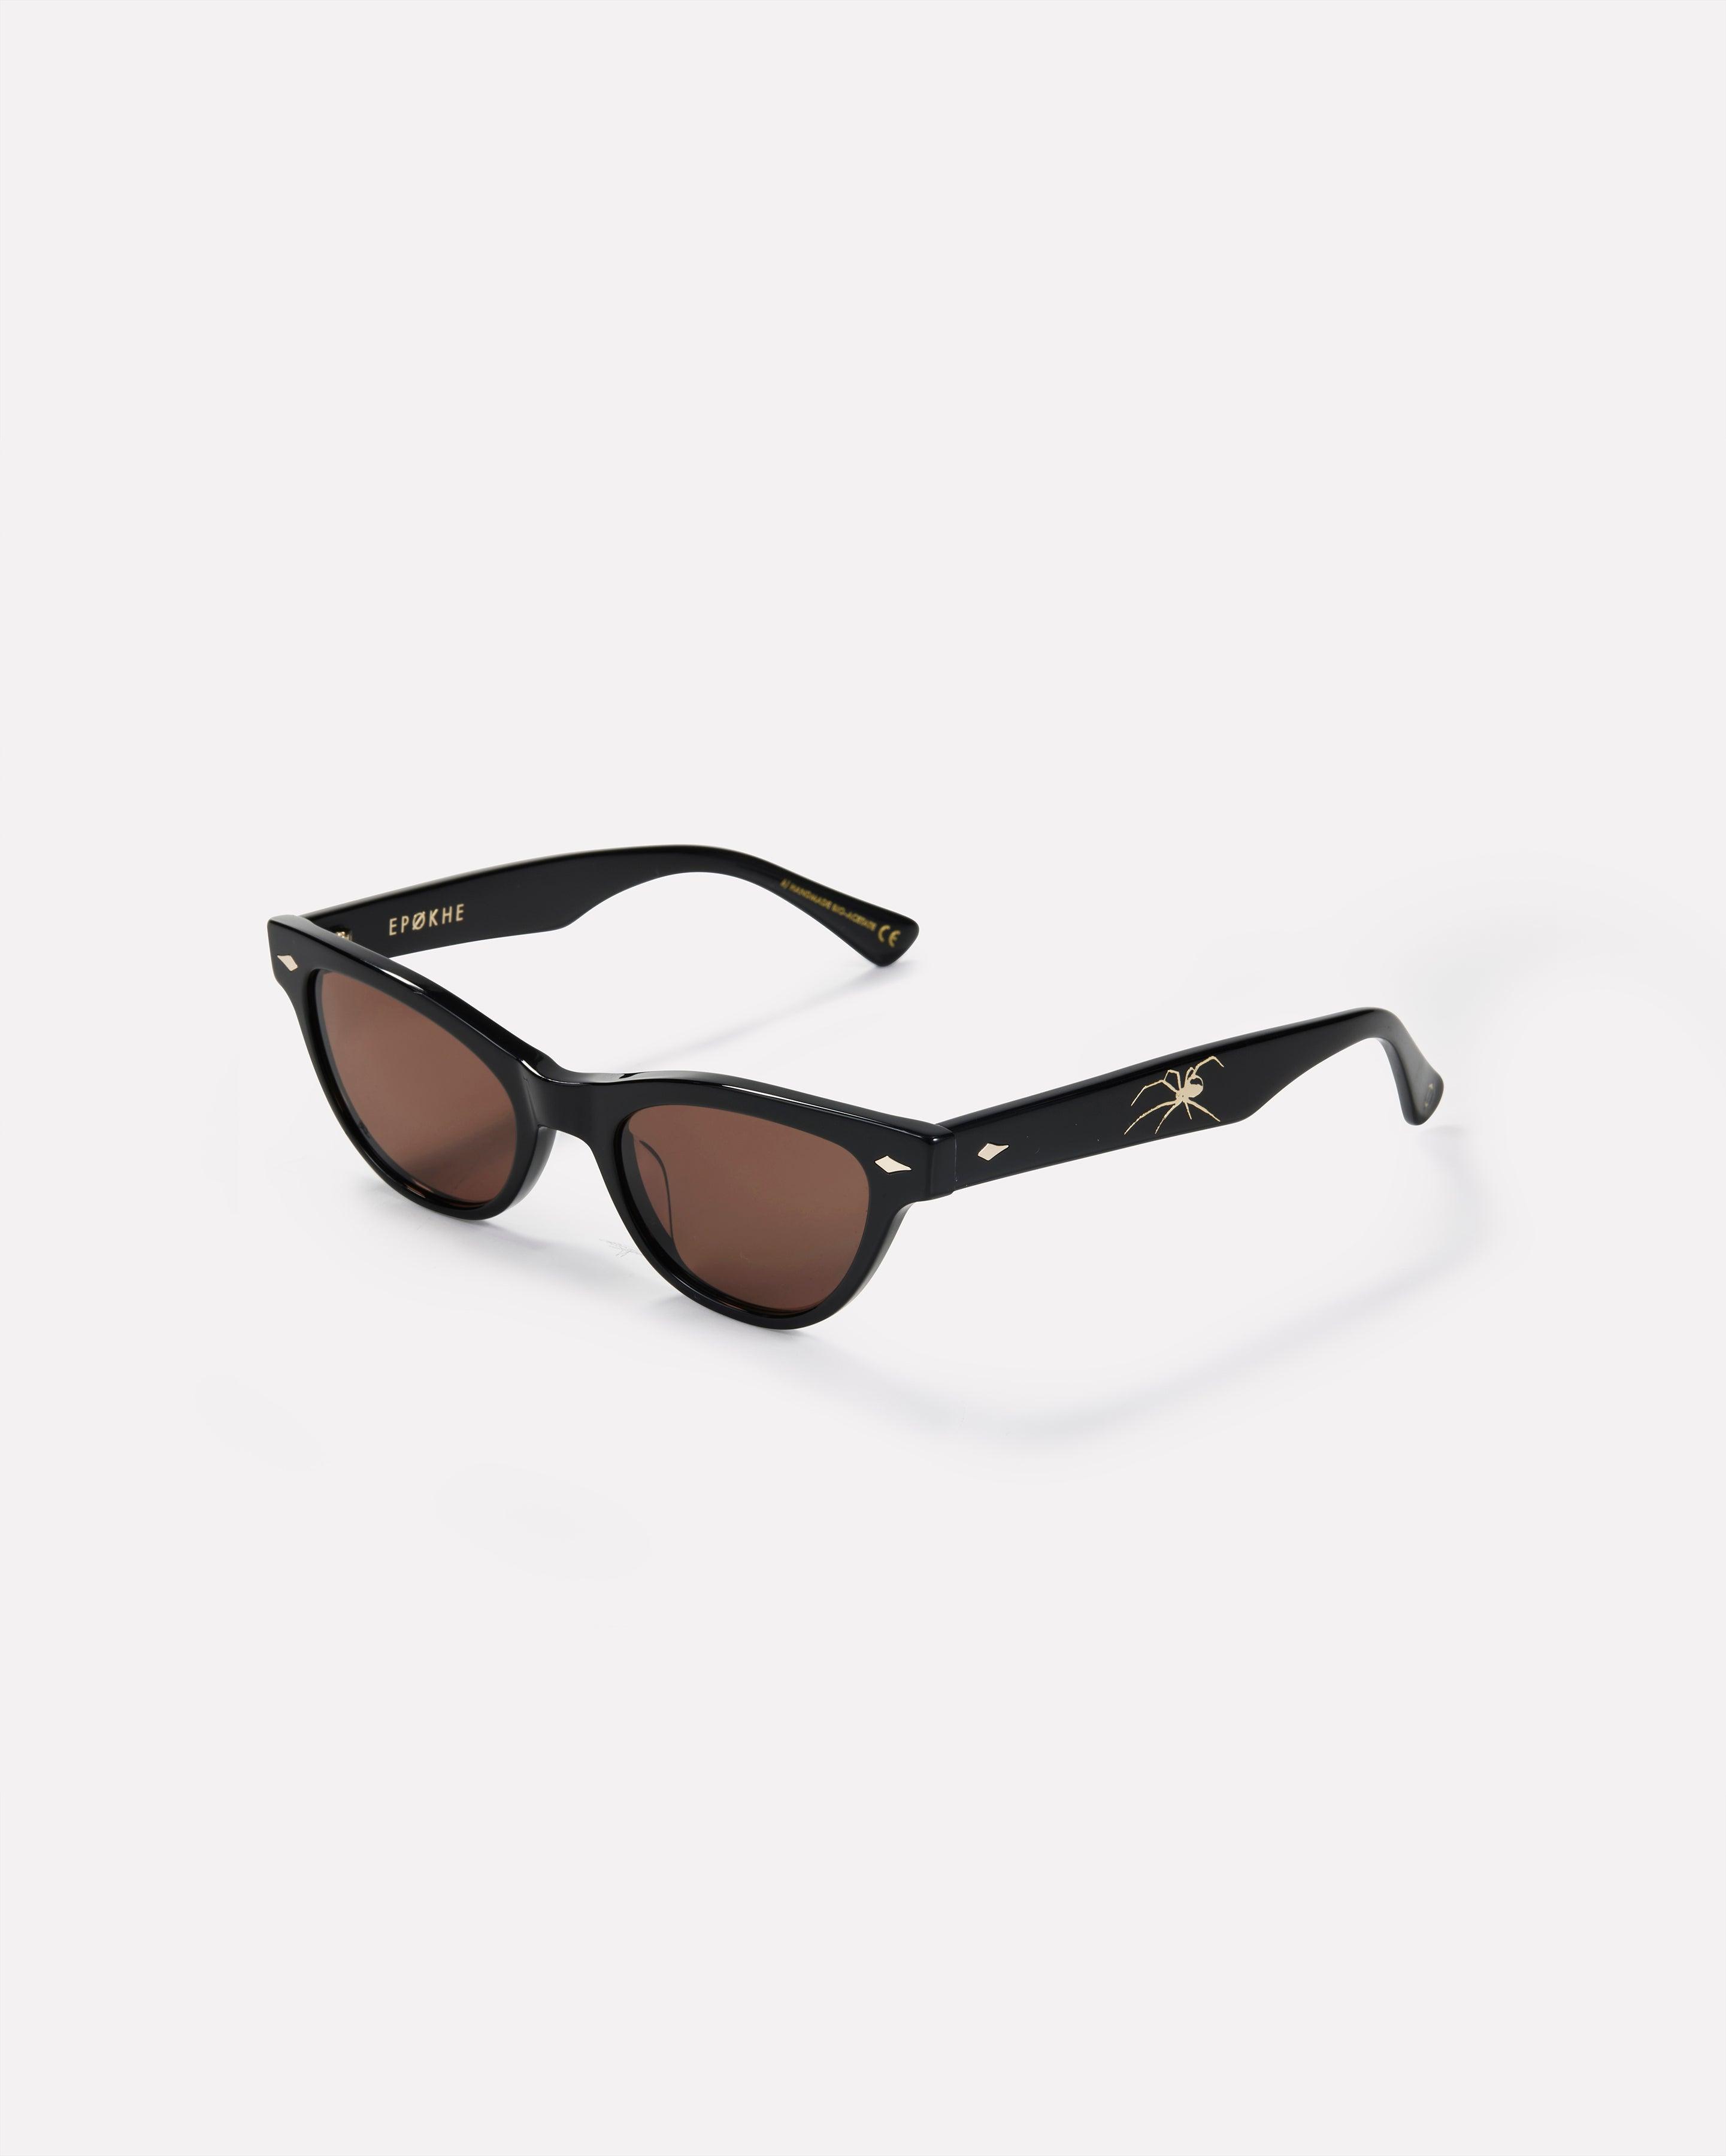 Veil - Black Polished / Bronze - Sunglasses - EPOKHE EYEWEAR